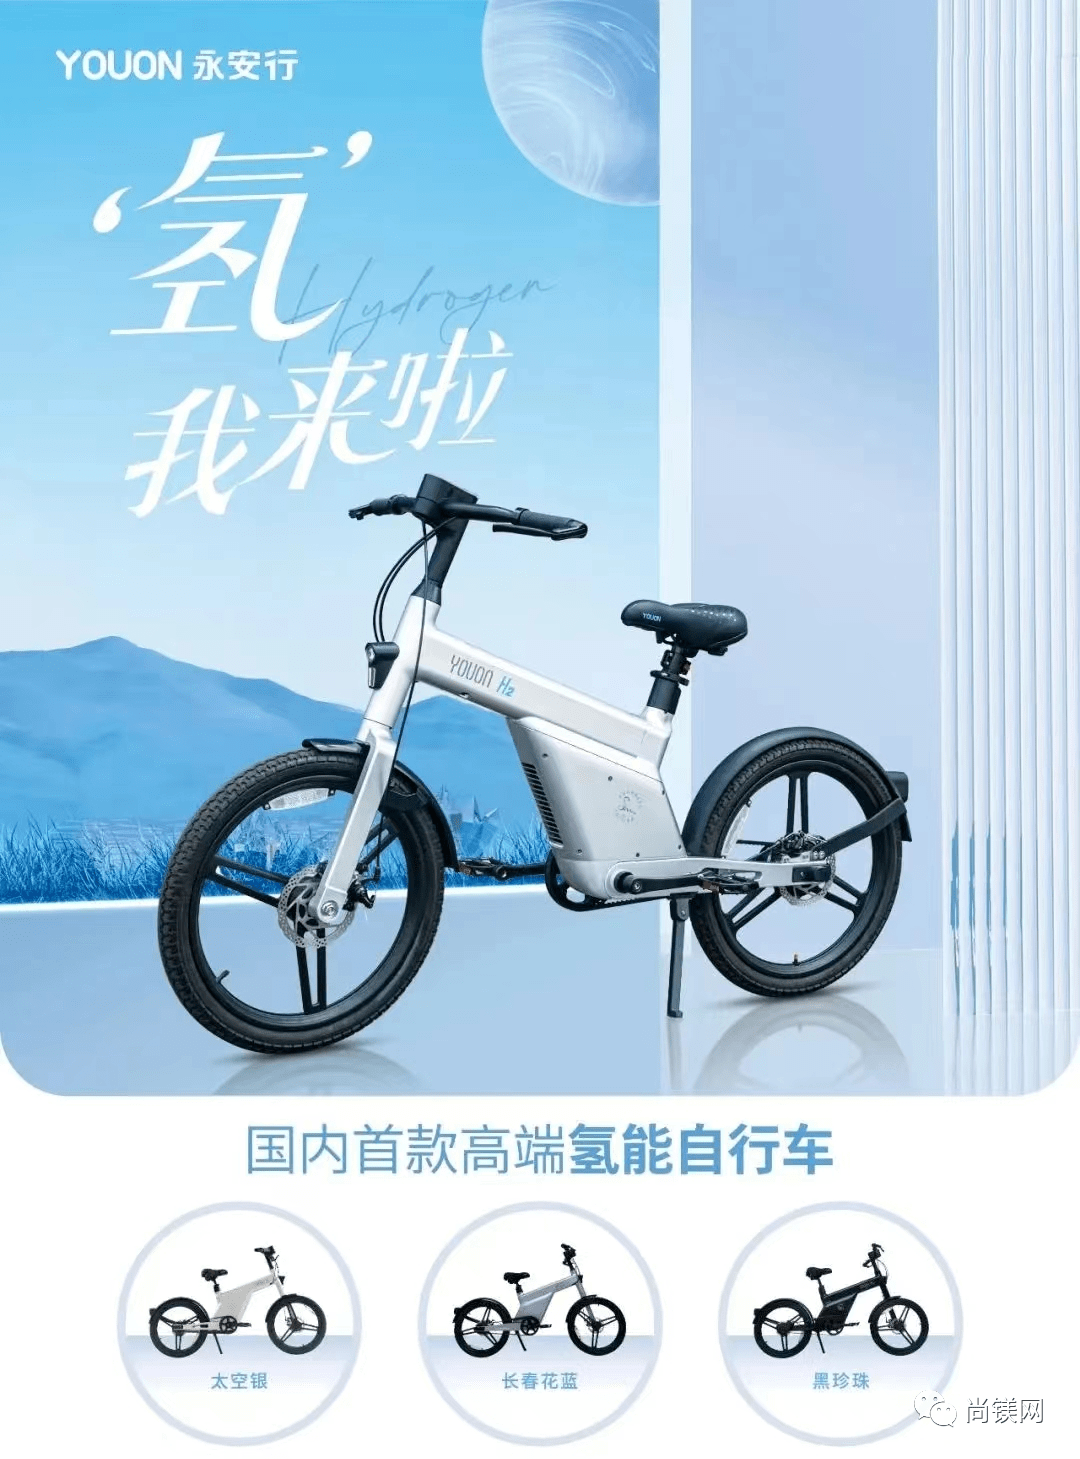 【镁铝合金车架】国内首款量产民用型氢能自行车上路!